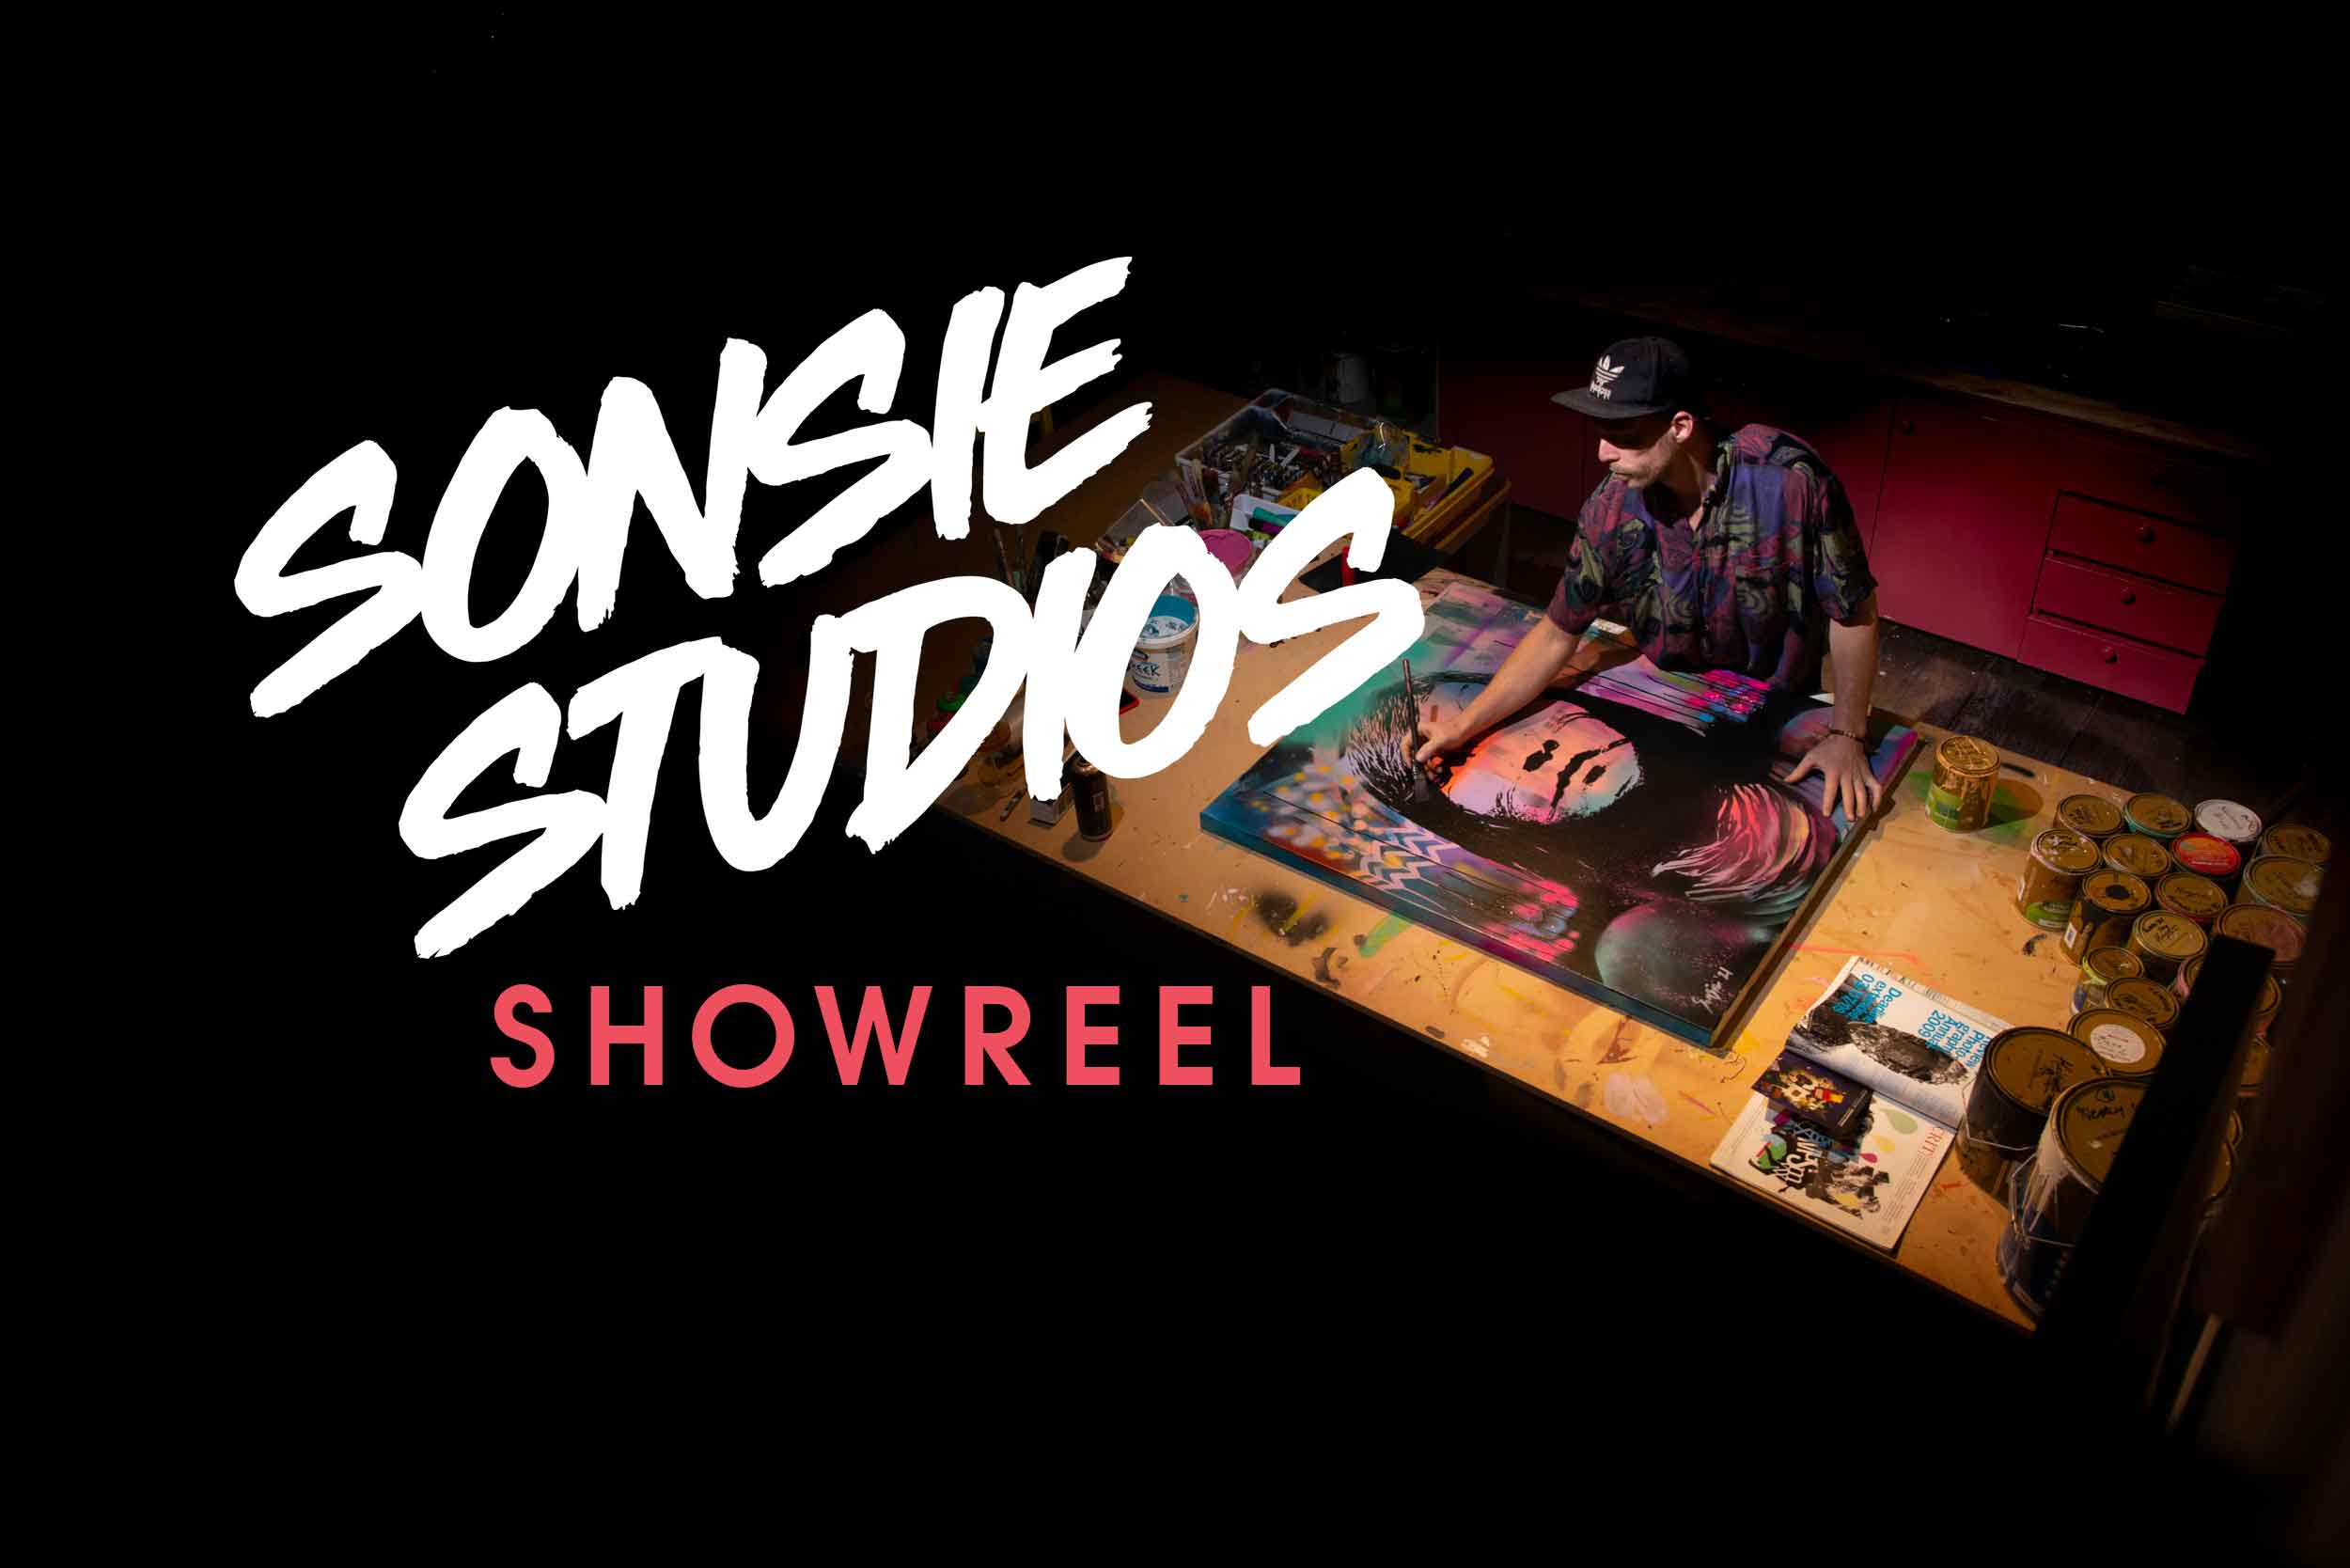 Sonsie Studios showreel of Paul Sonsie designing projects.